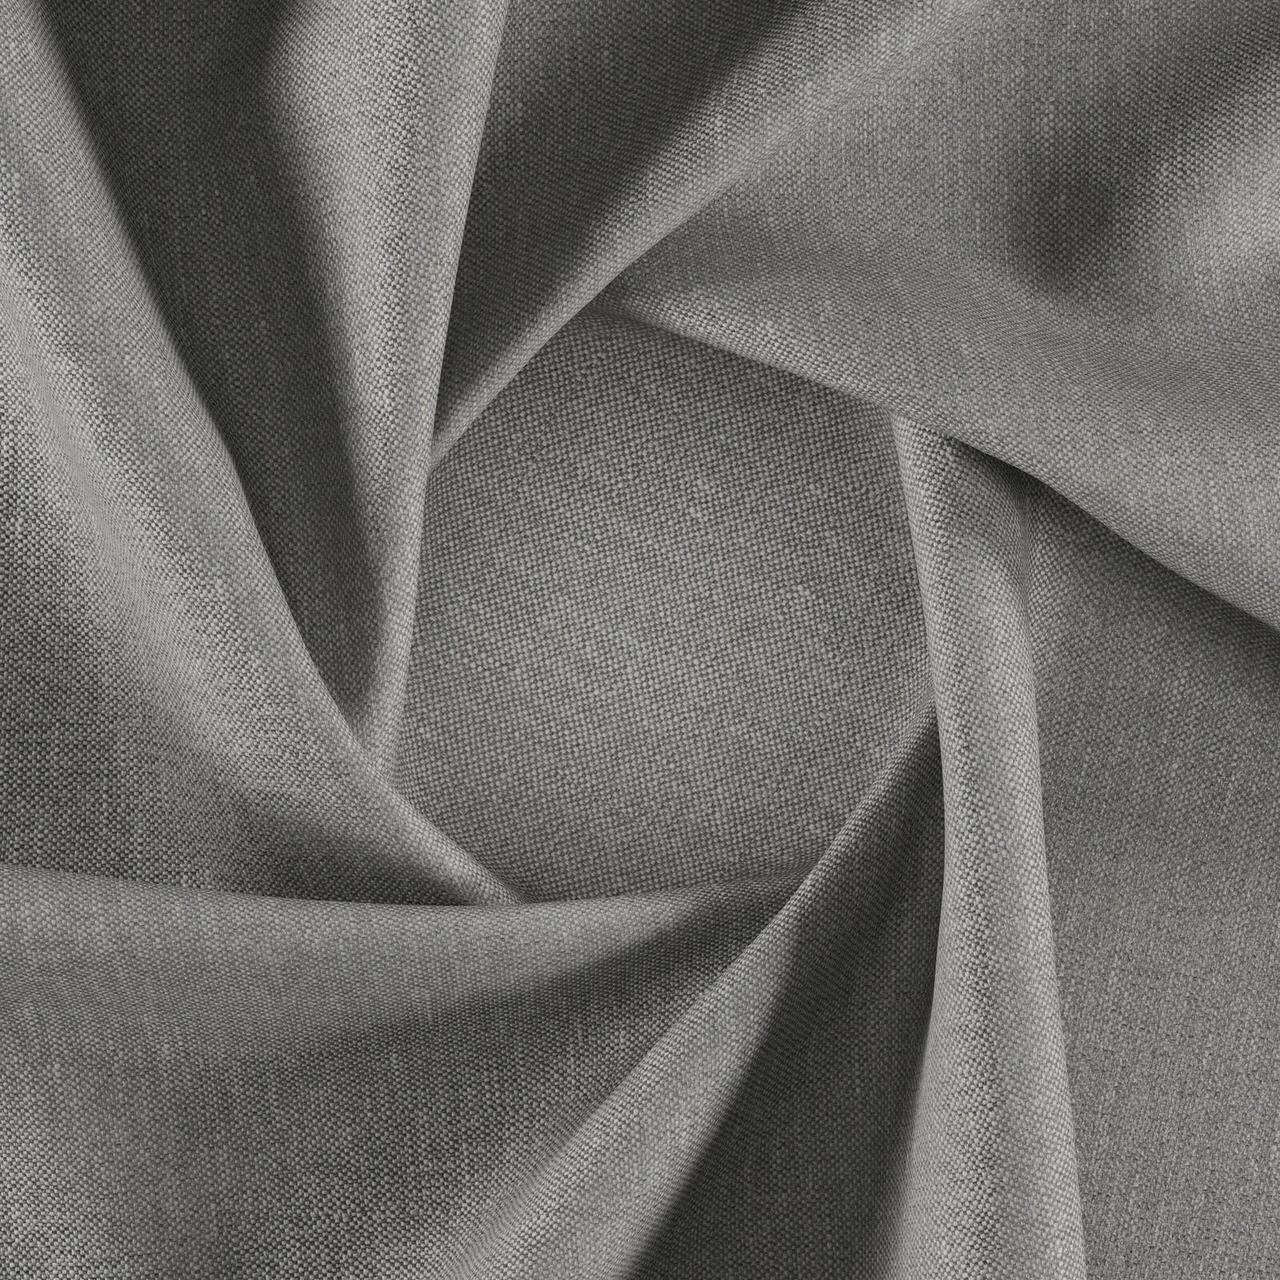 Тканина для перетяжки м'яких меблів шеніл Перфекто (Perfecto) сірого кольору